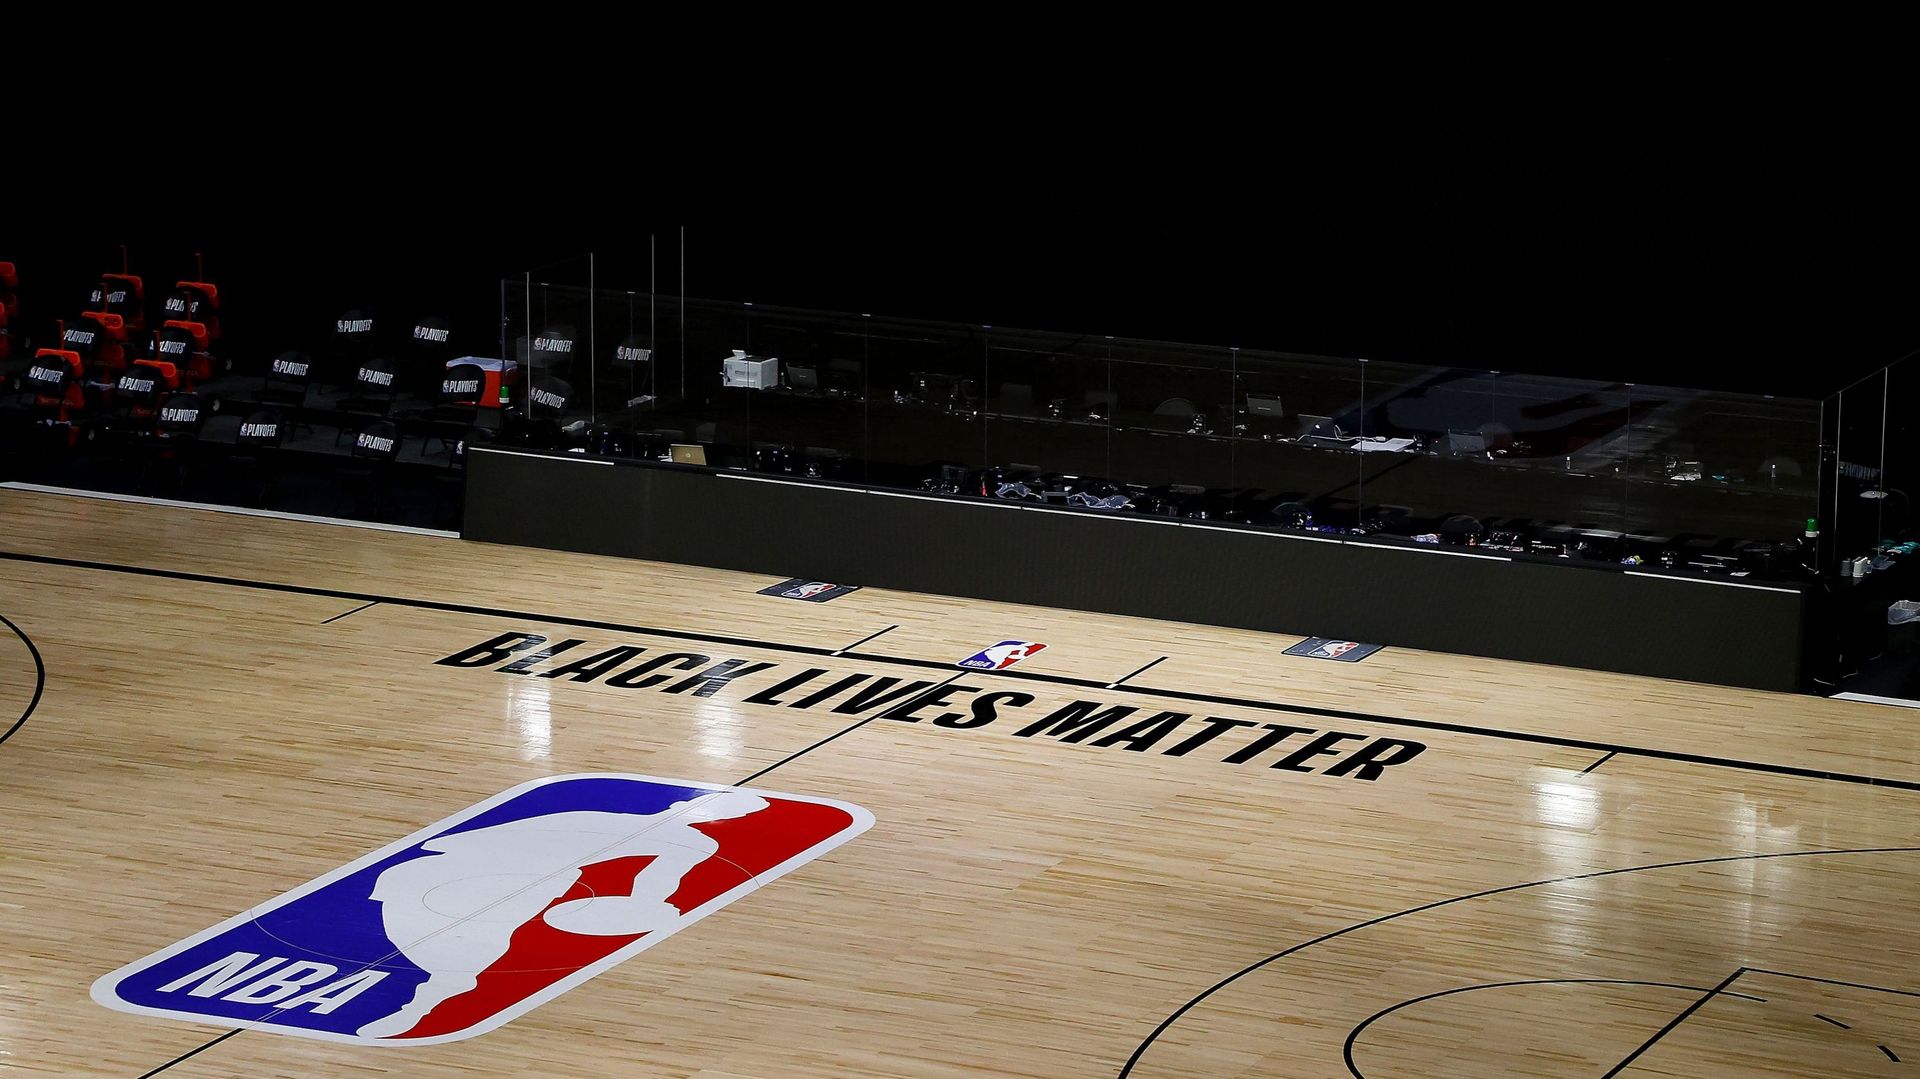 La NBA annonce la reprise des play-offs samedi, après le boycott des joueurs